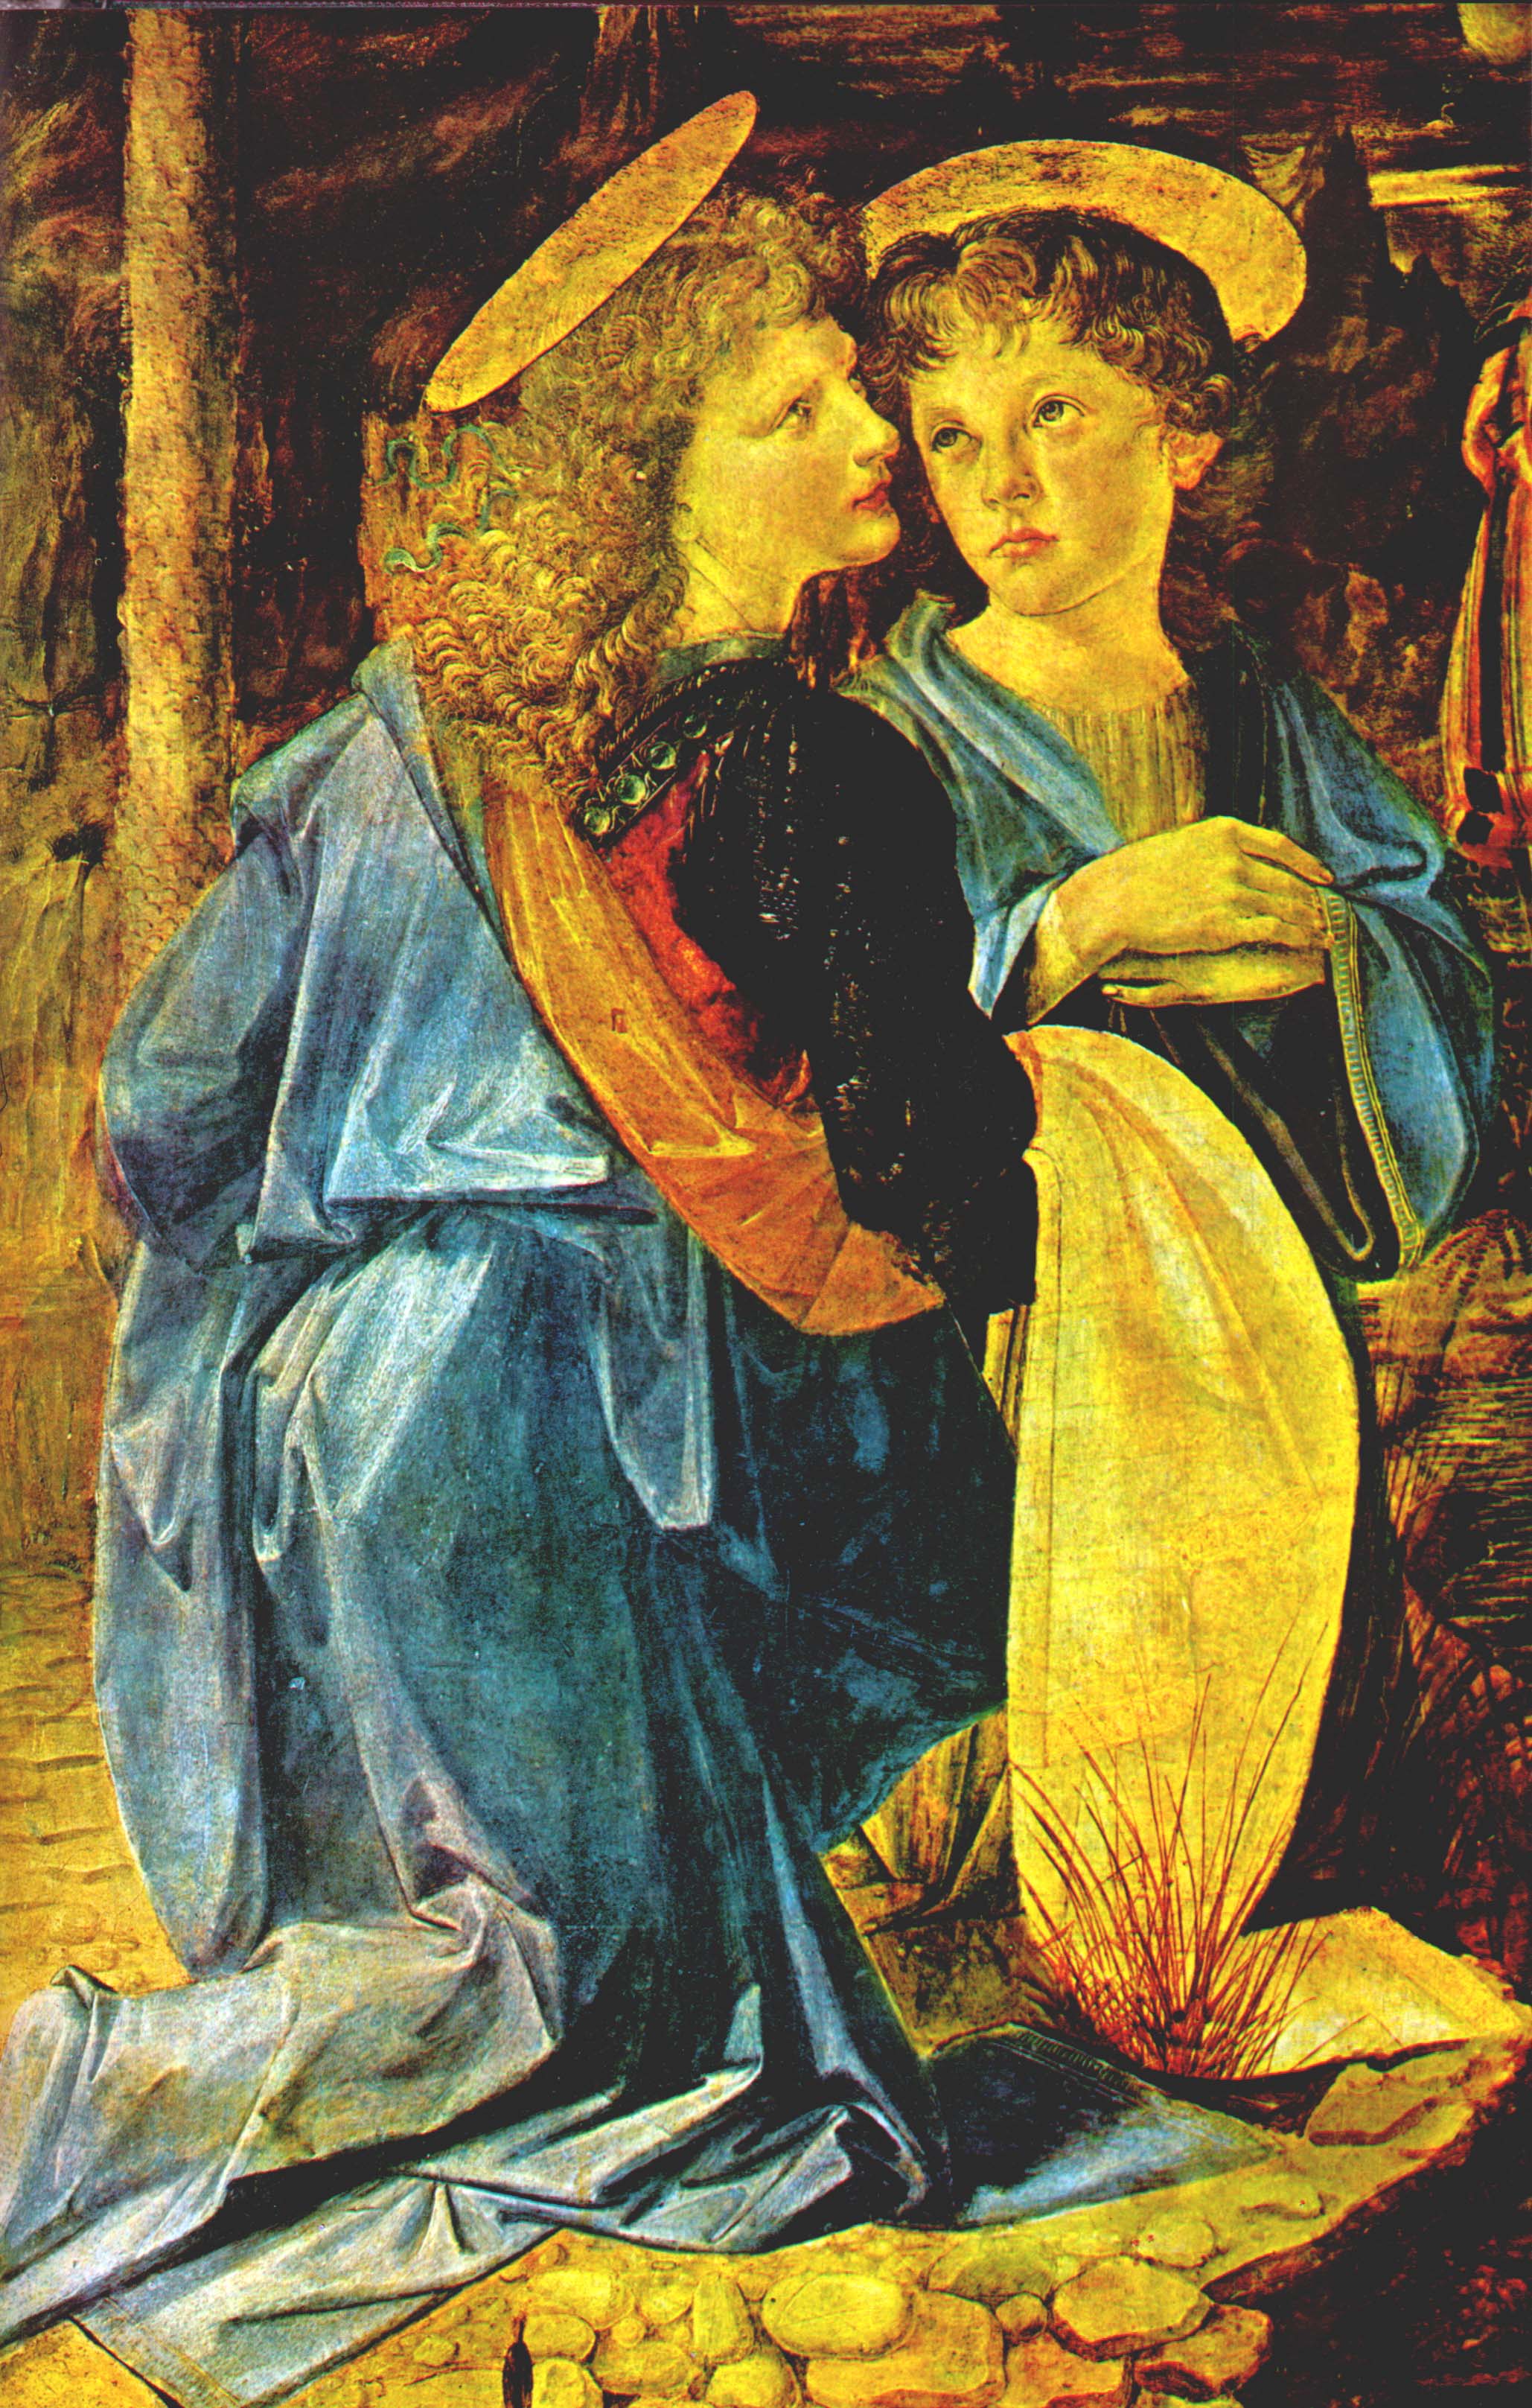 Леонардо да Винчи. "Коленопреклонённый ангел в профиль. Фрагмент картины Андреа дель Верроккио "Крещение Христа". 1472.